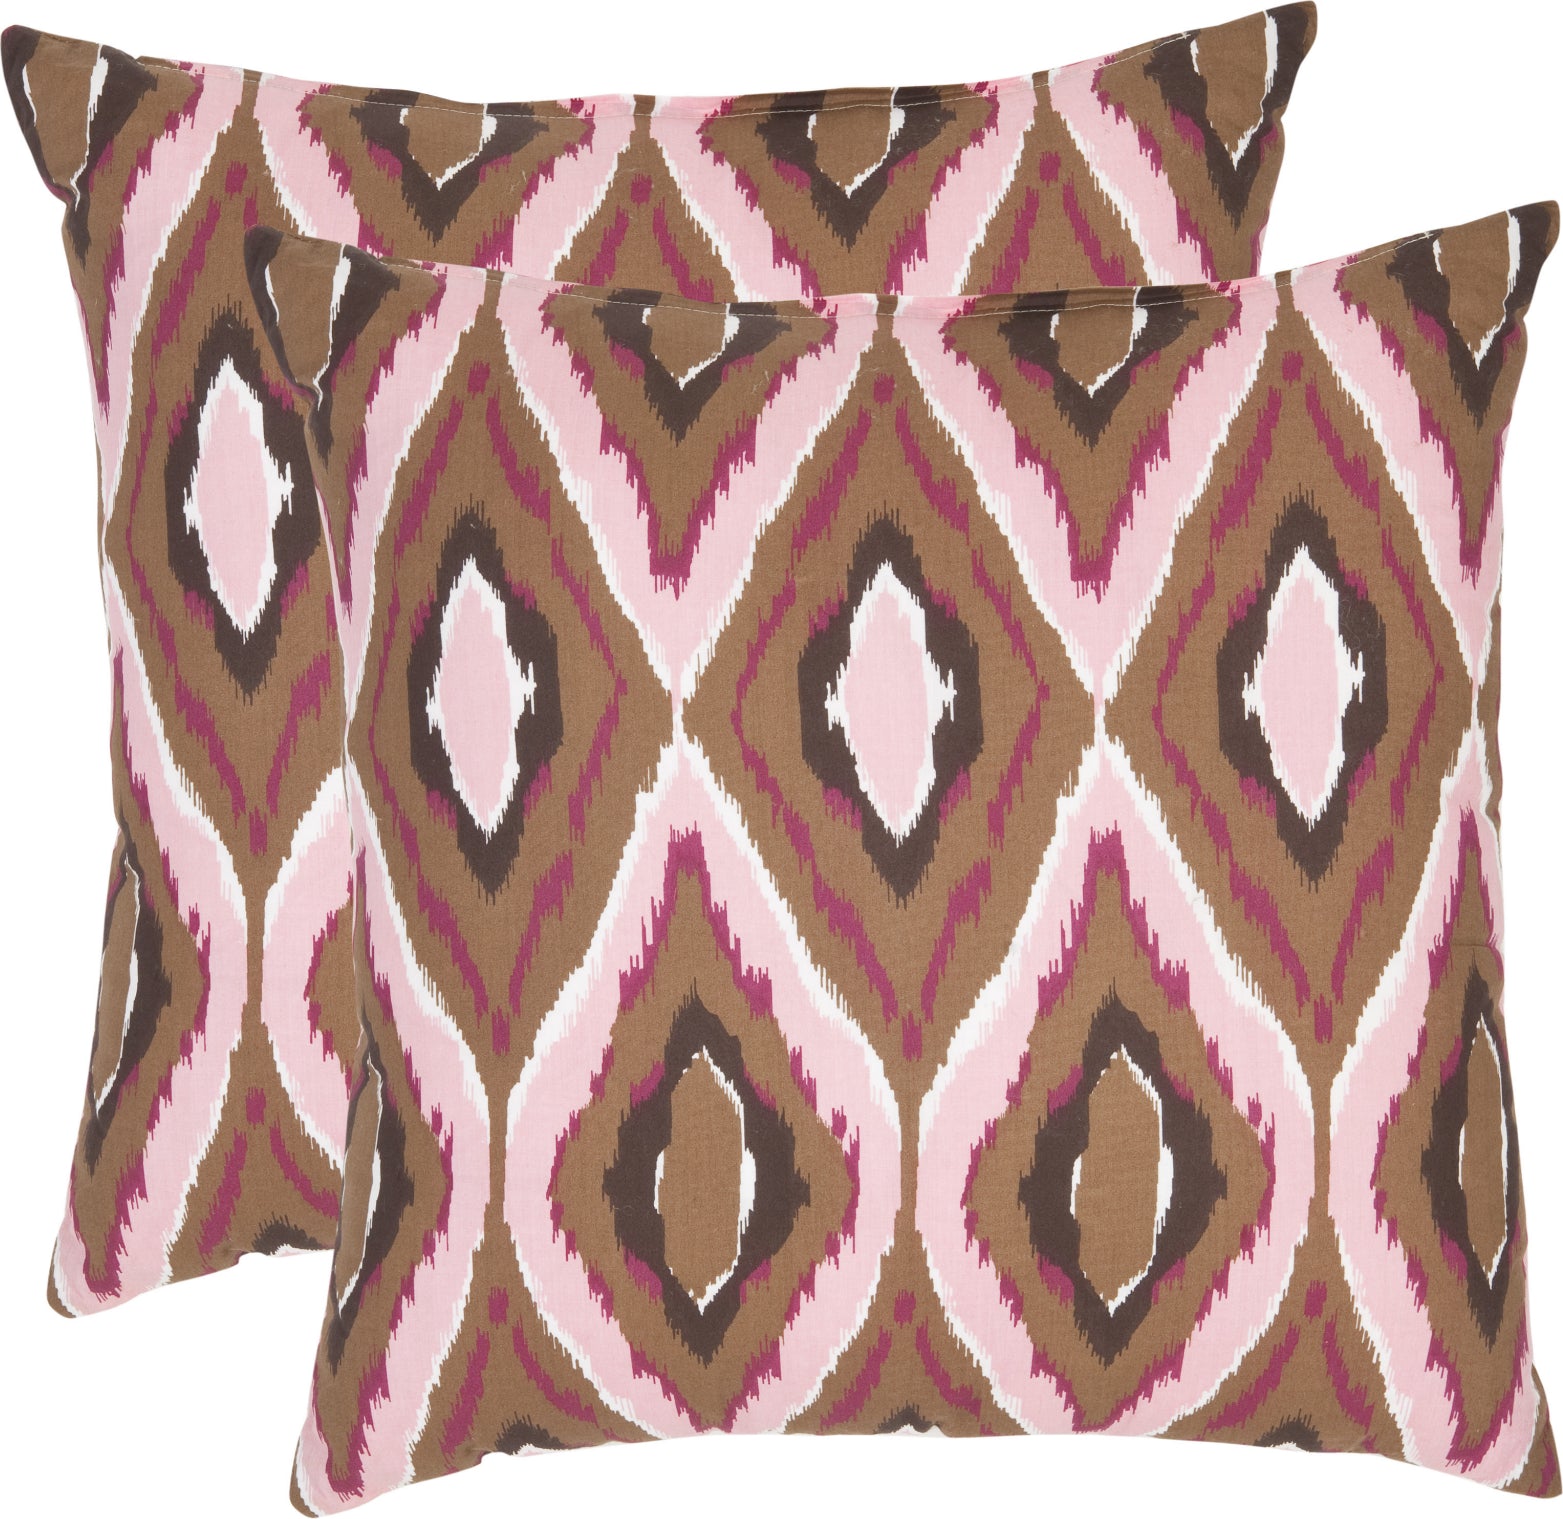 Safavieh Sophie Printed Patterns Pink main image